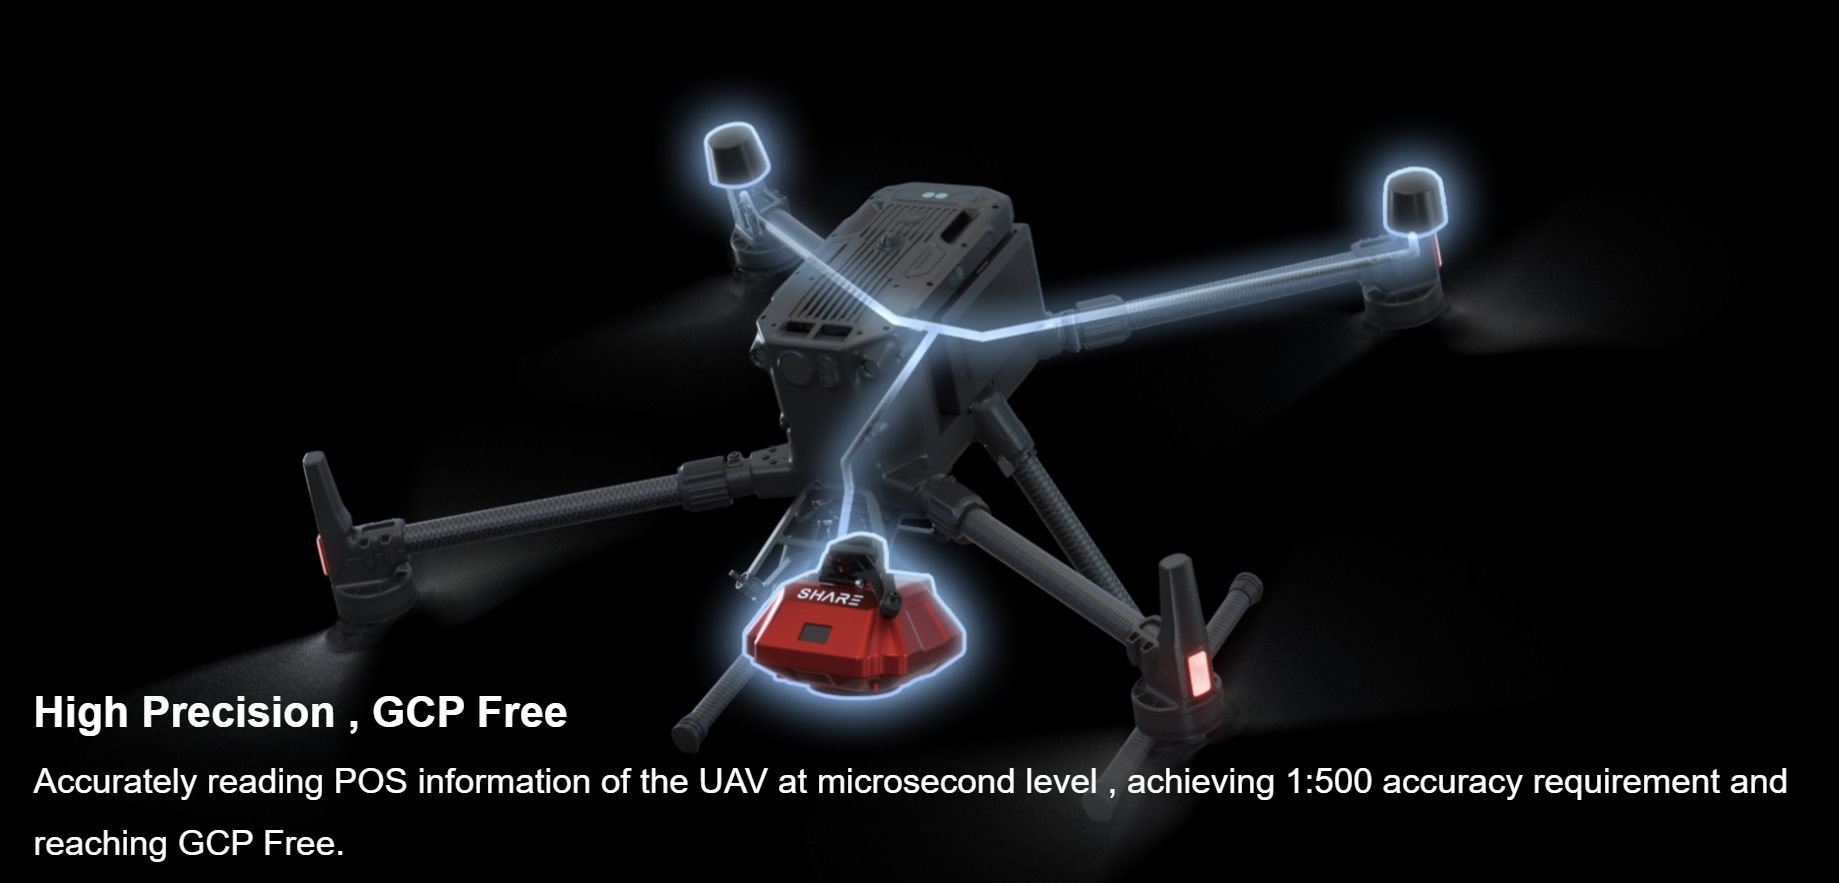 Share UAV 102s Pro v2 UK - Edinburgh Drone Company - High Precision, GCP Free